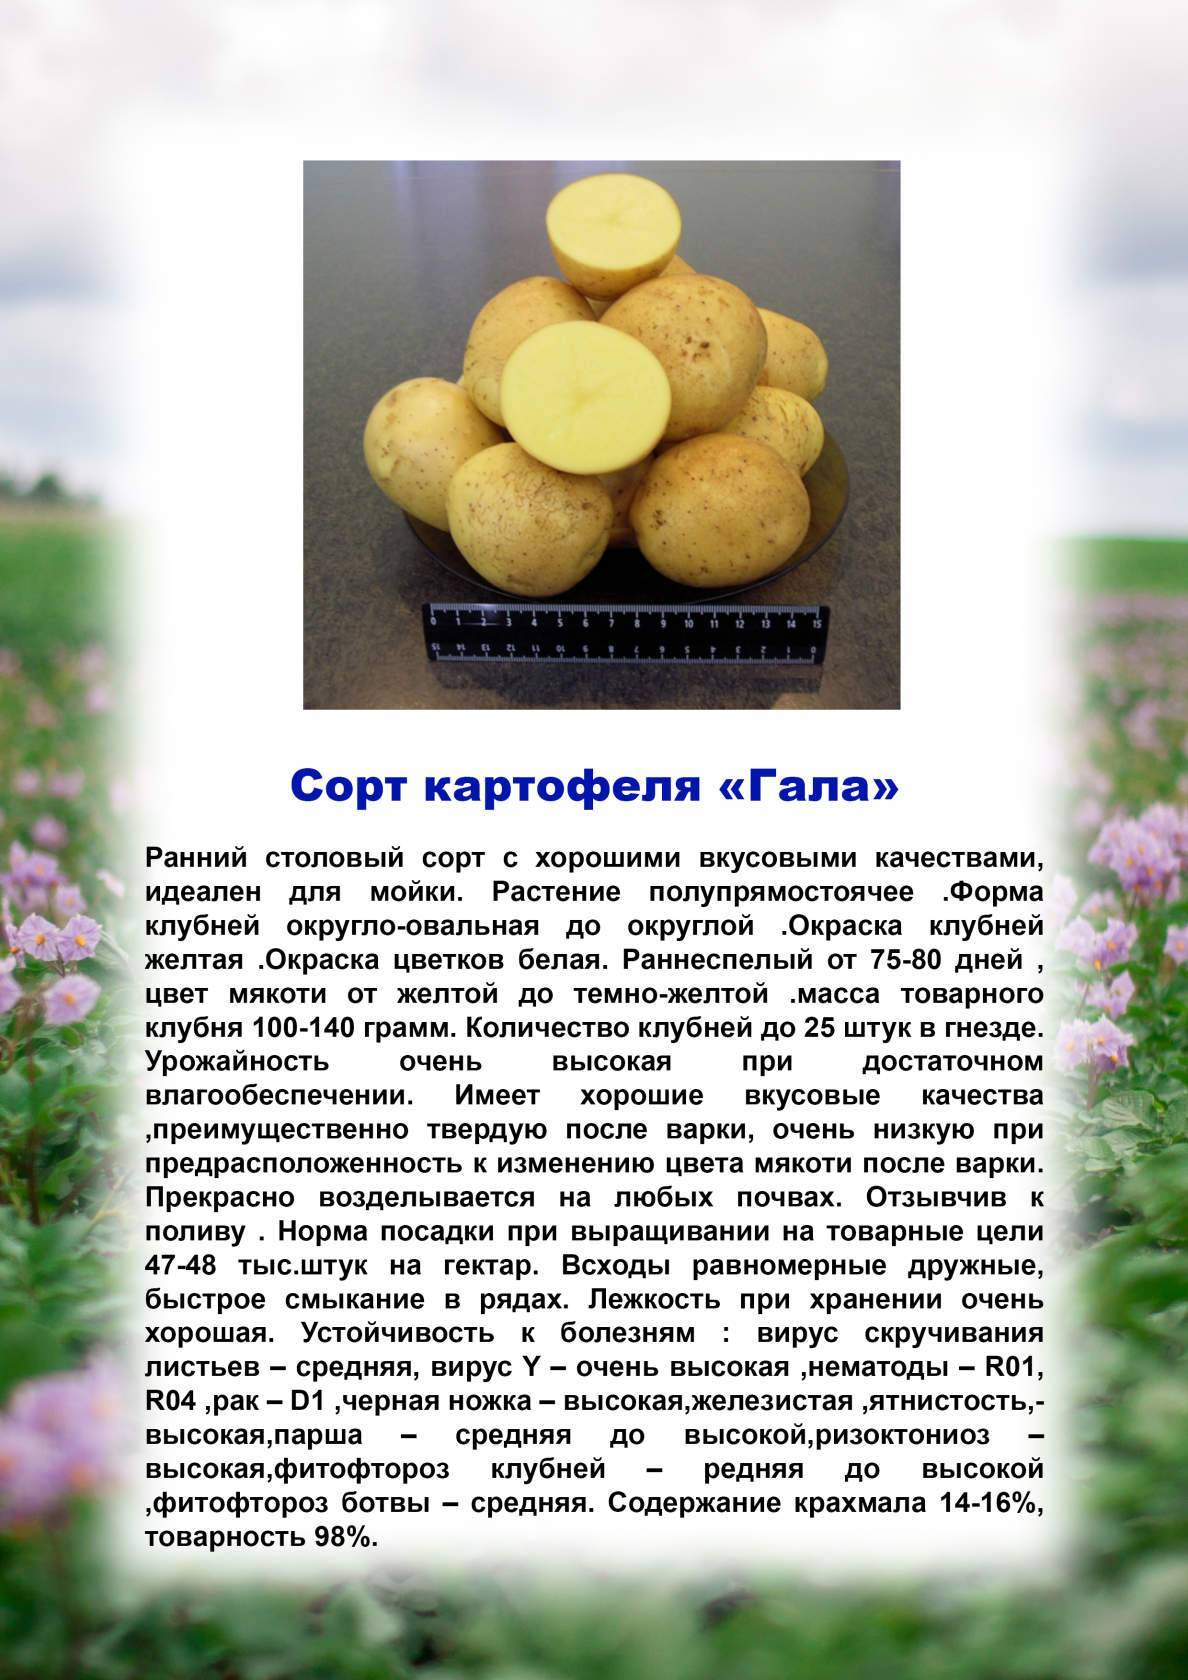 Картофель ривьера: характеристика сорта и особенности выращивания